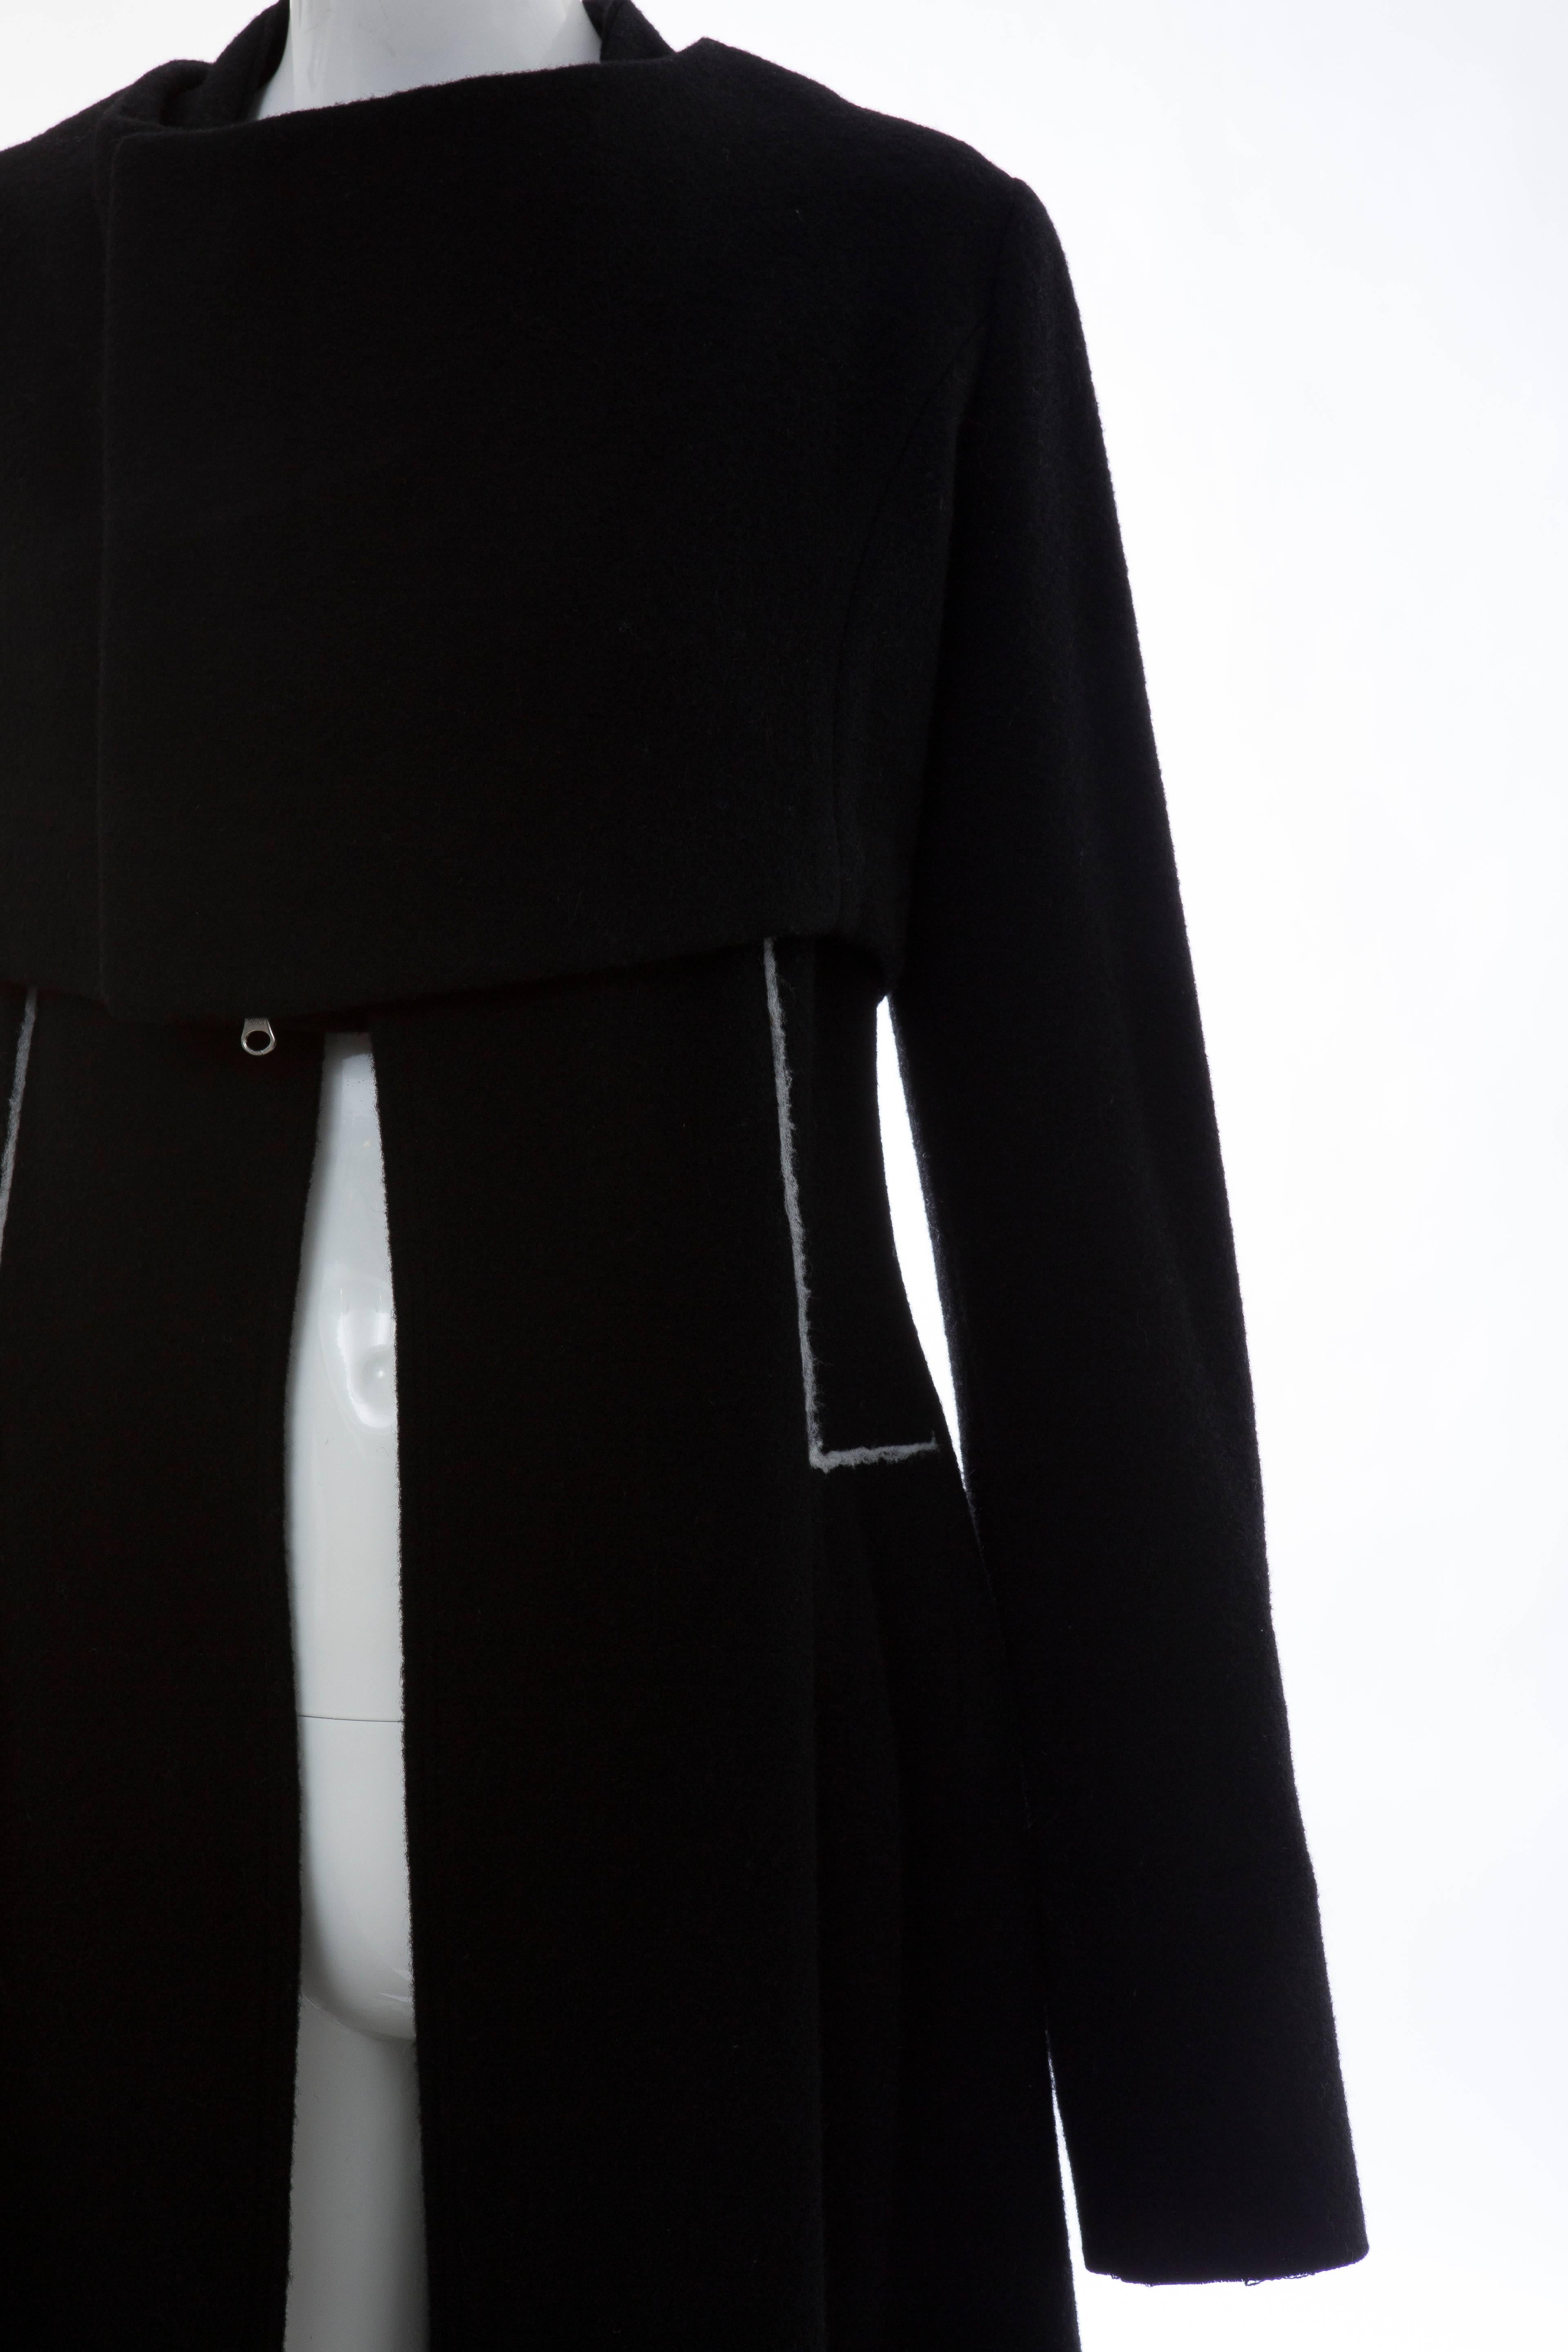 Yohji Yamamoto Black Wool Zip Front Jacket And Vest Ensemble 2